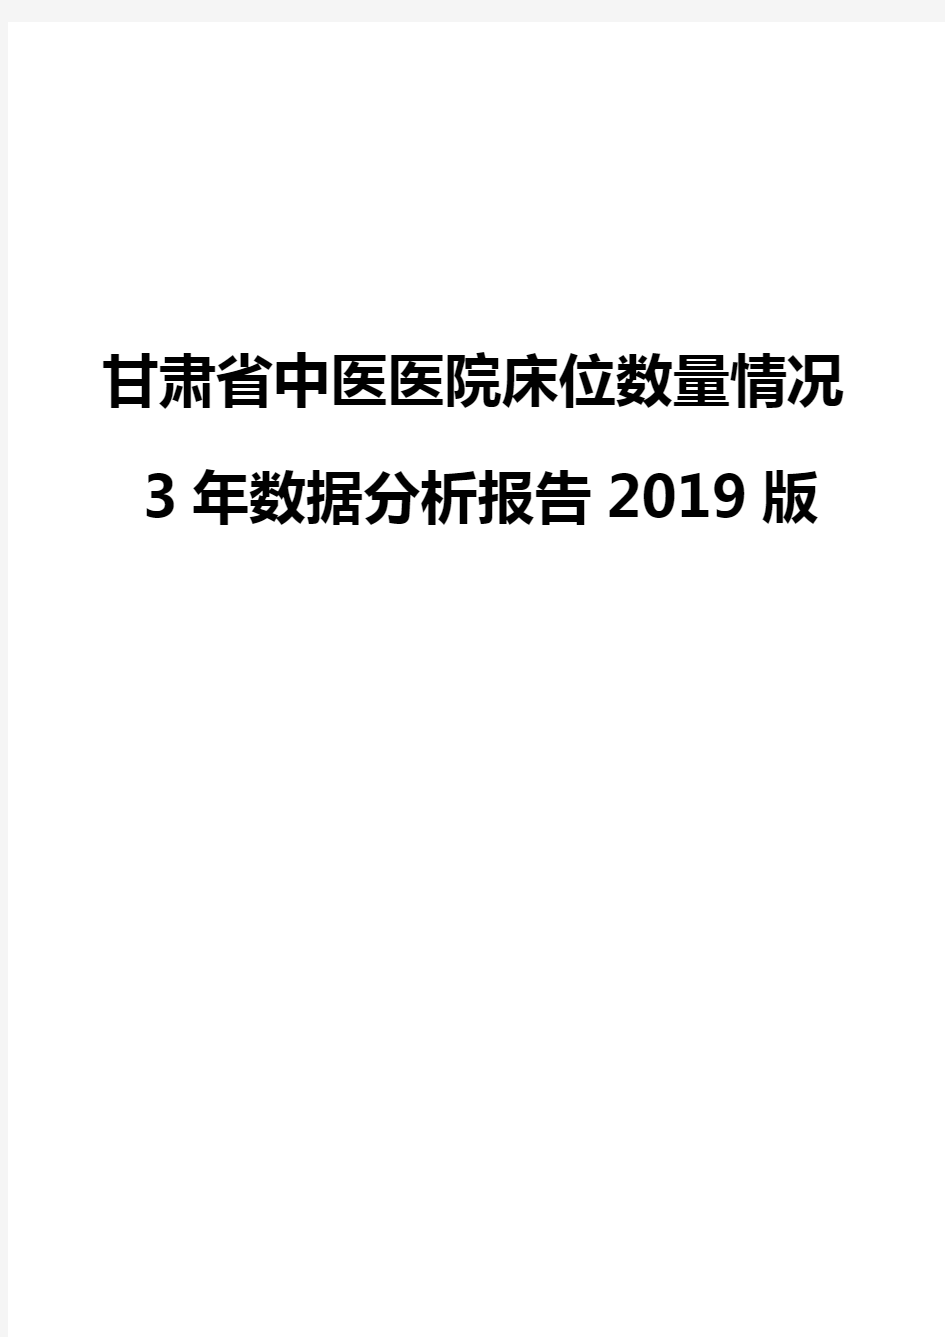 甘肃省中医医院床位数量情况3年数据分析报告2019版